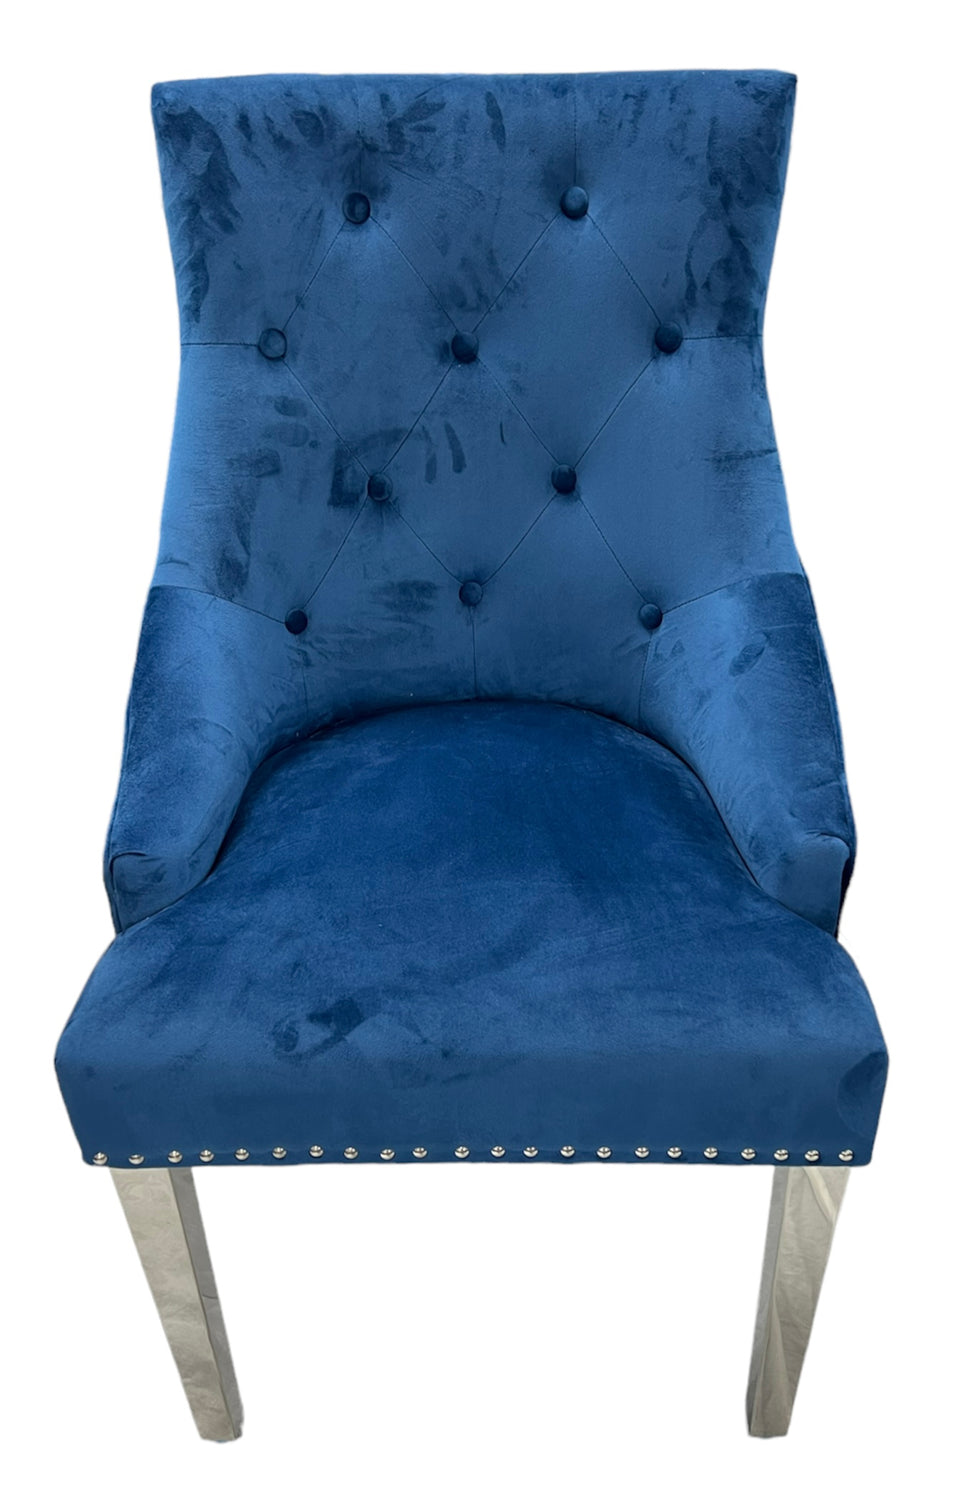 Roma Blue Chair Lion Knocker Chrome Legs